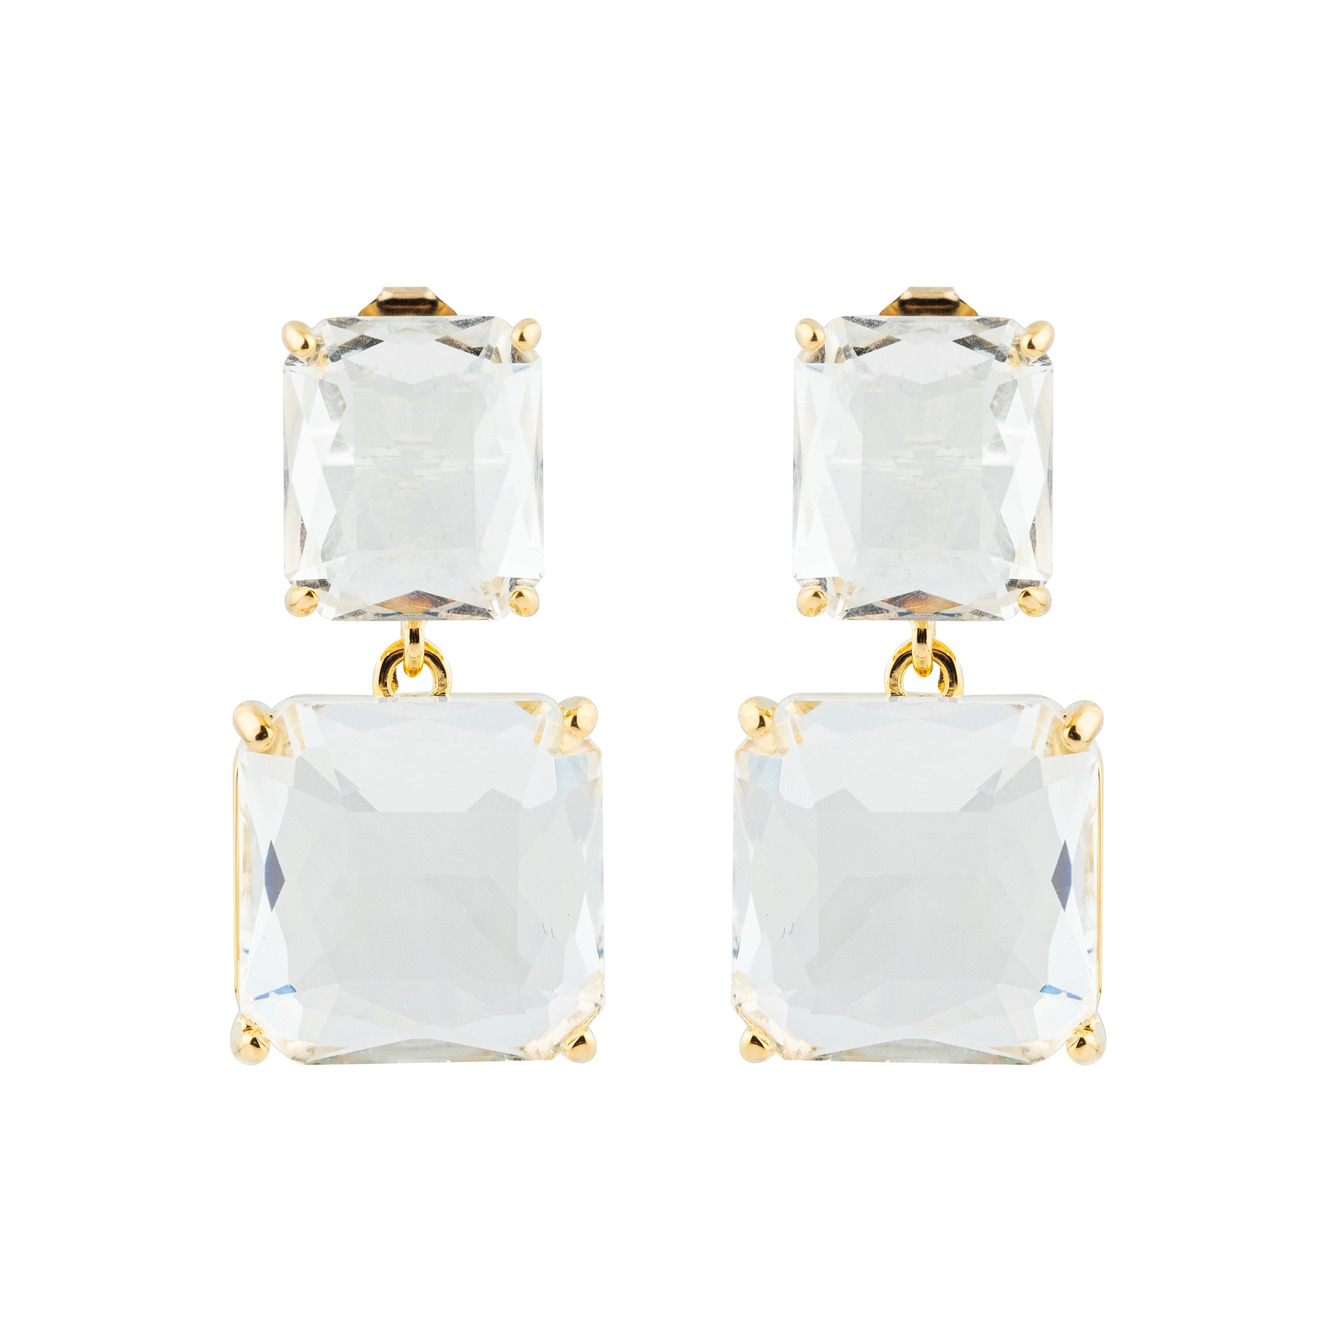 Herald Percy Двойные золотистые серьги с белыми кристаллами herald percy двойные золотистые серьги с белыми кристаллами